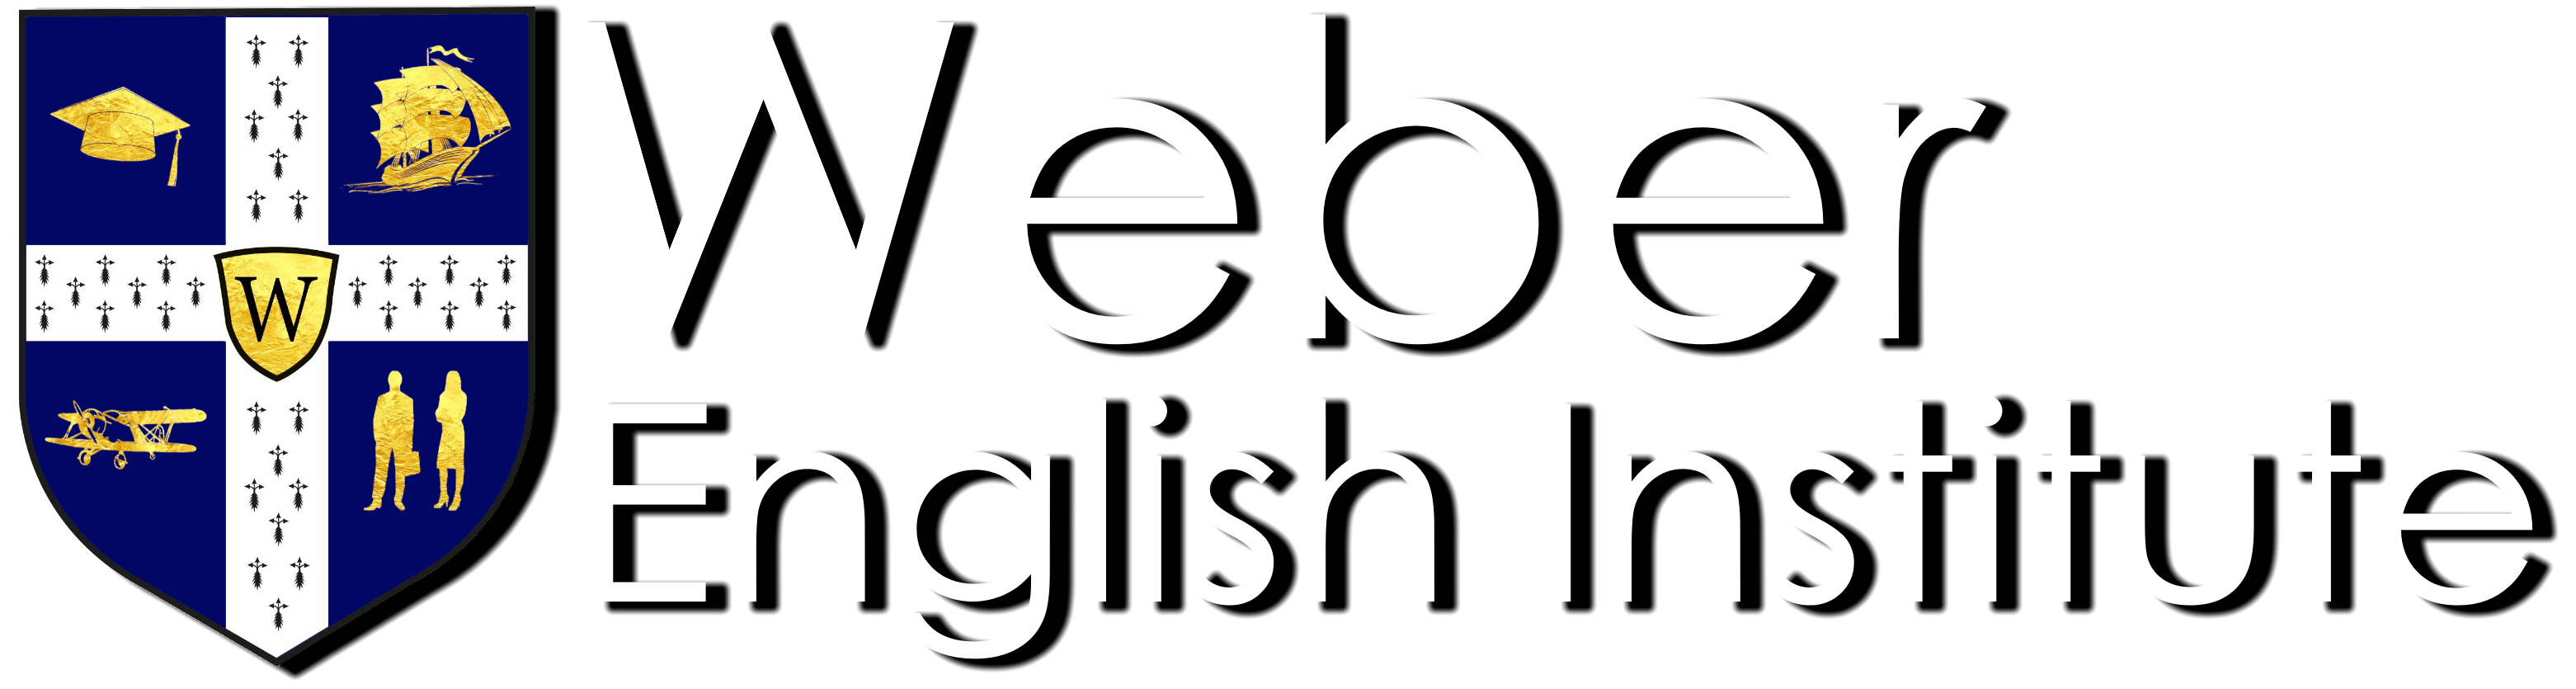 WEBER ENGLISH INSTITUTE